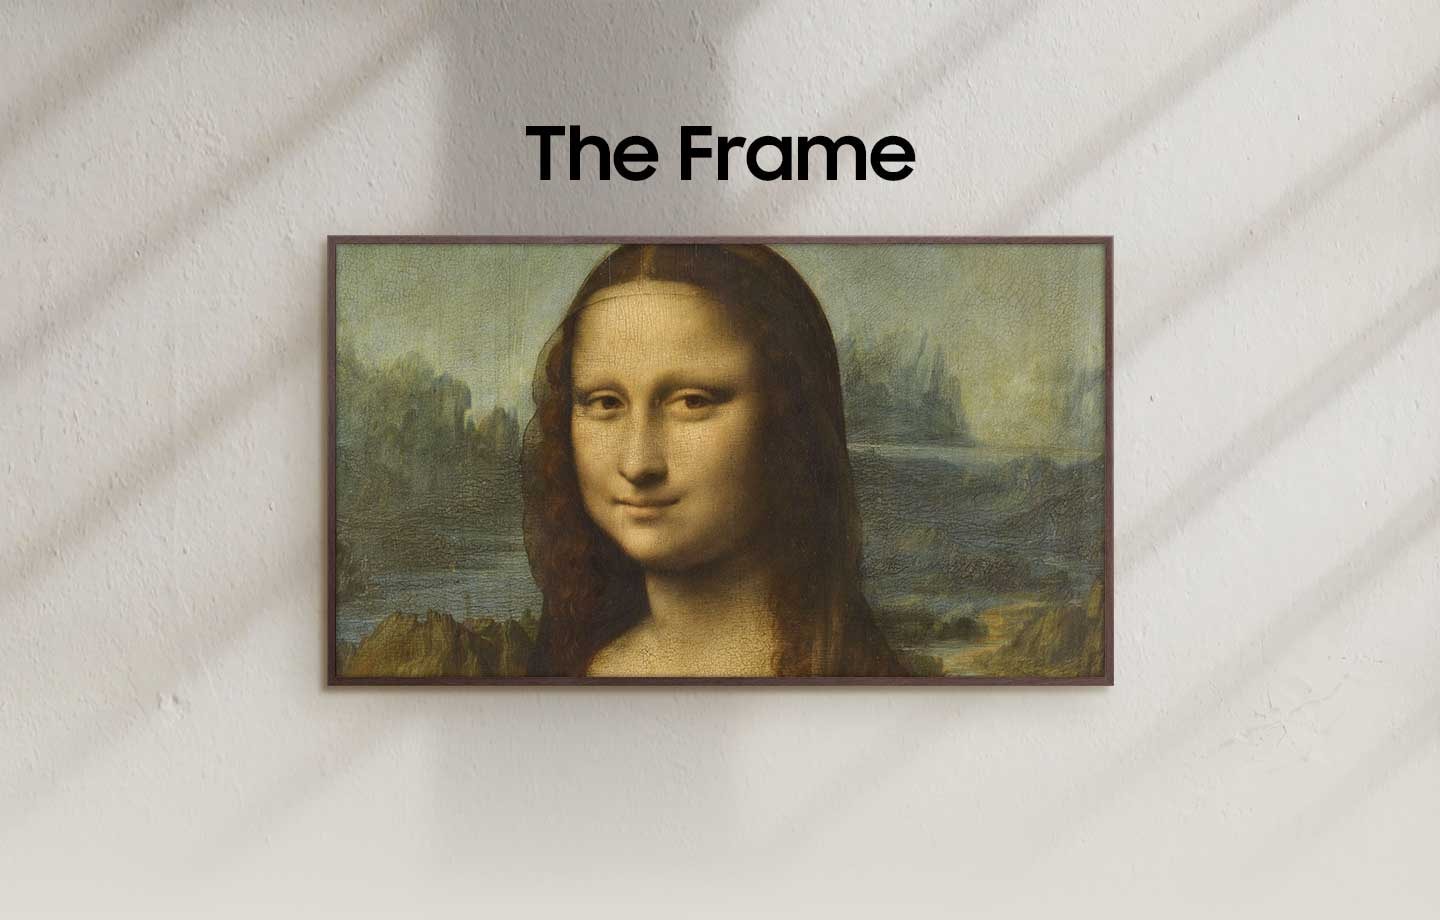 The Frame présente La Joconde à l'écran.